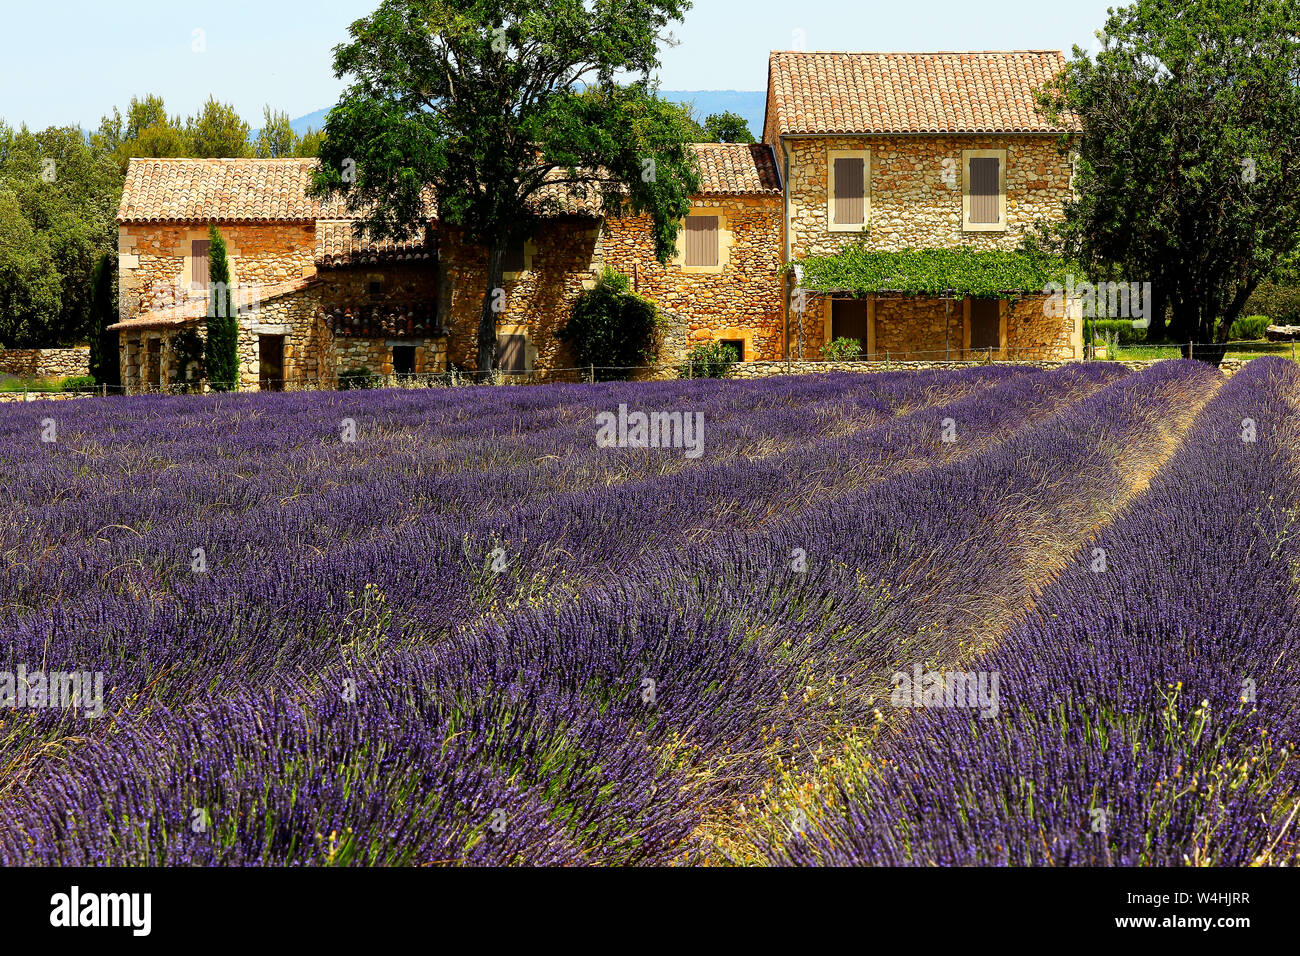 Farmhouse and lavender field, Bonnieux, Provence-Alpes-Cote d'Azur, France. Stock Photo